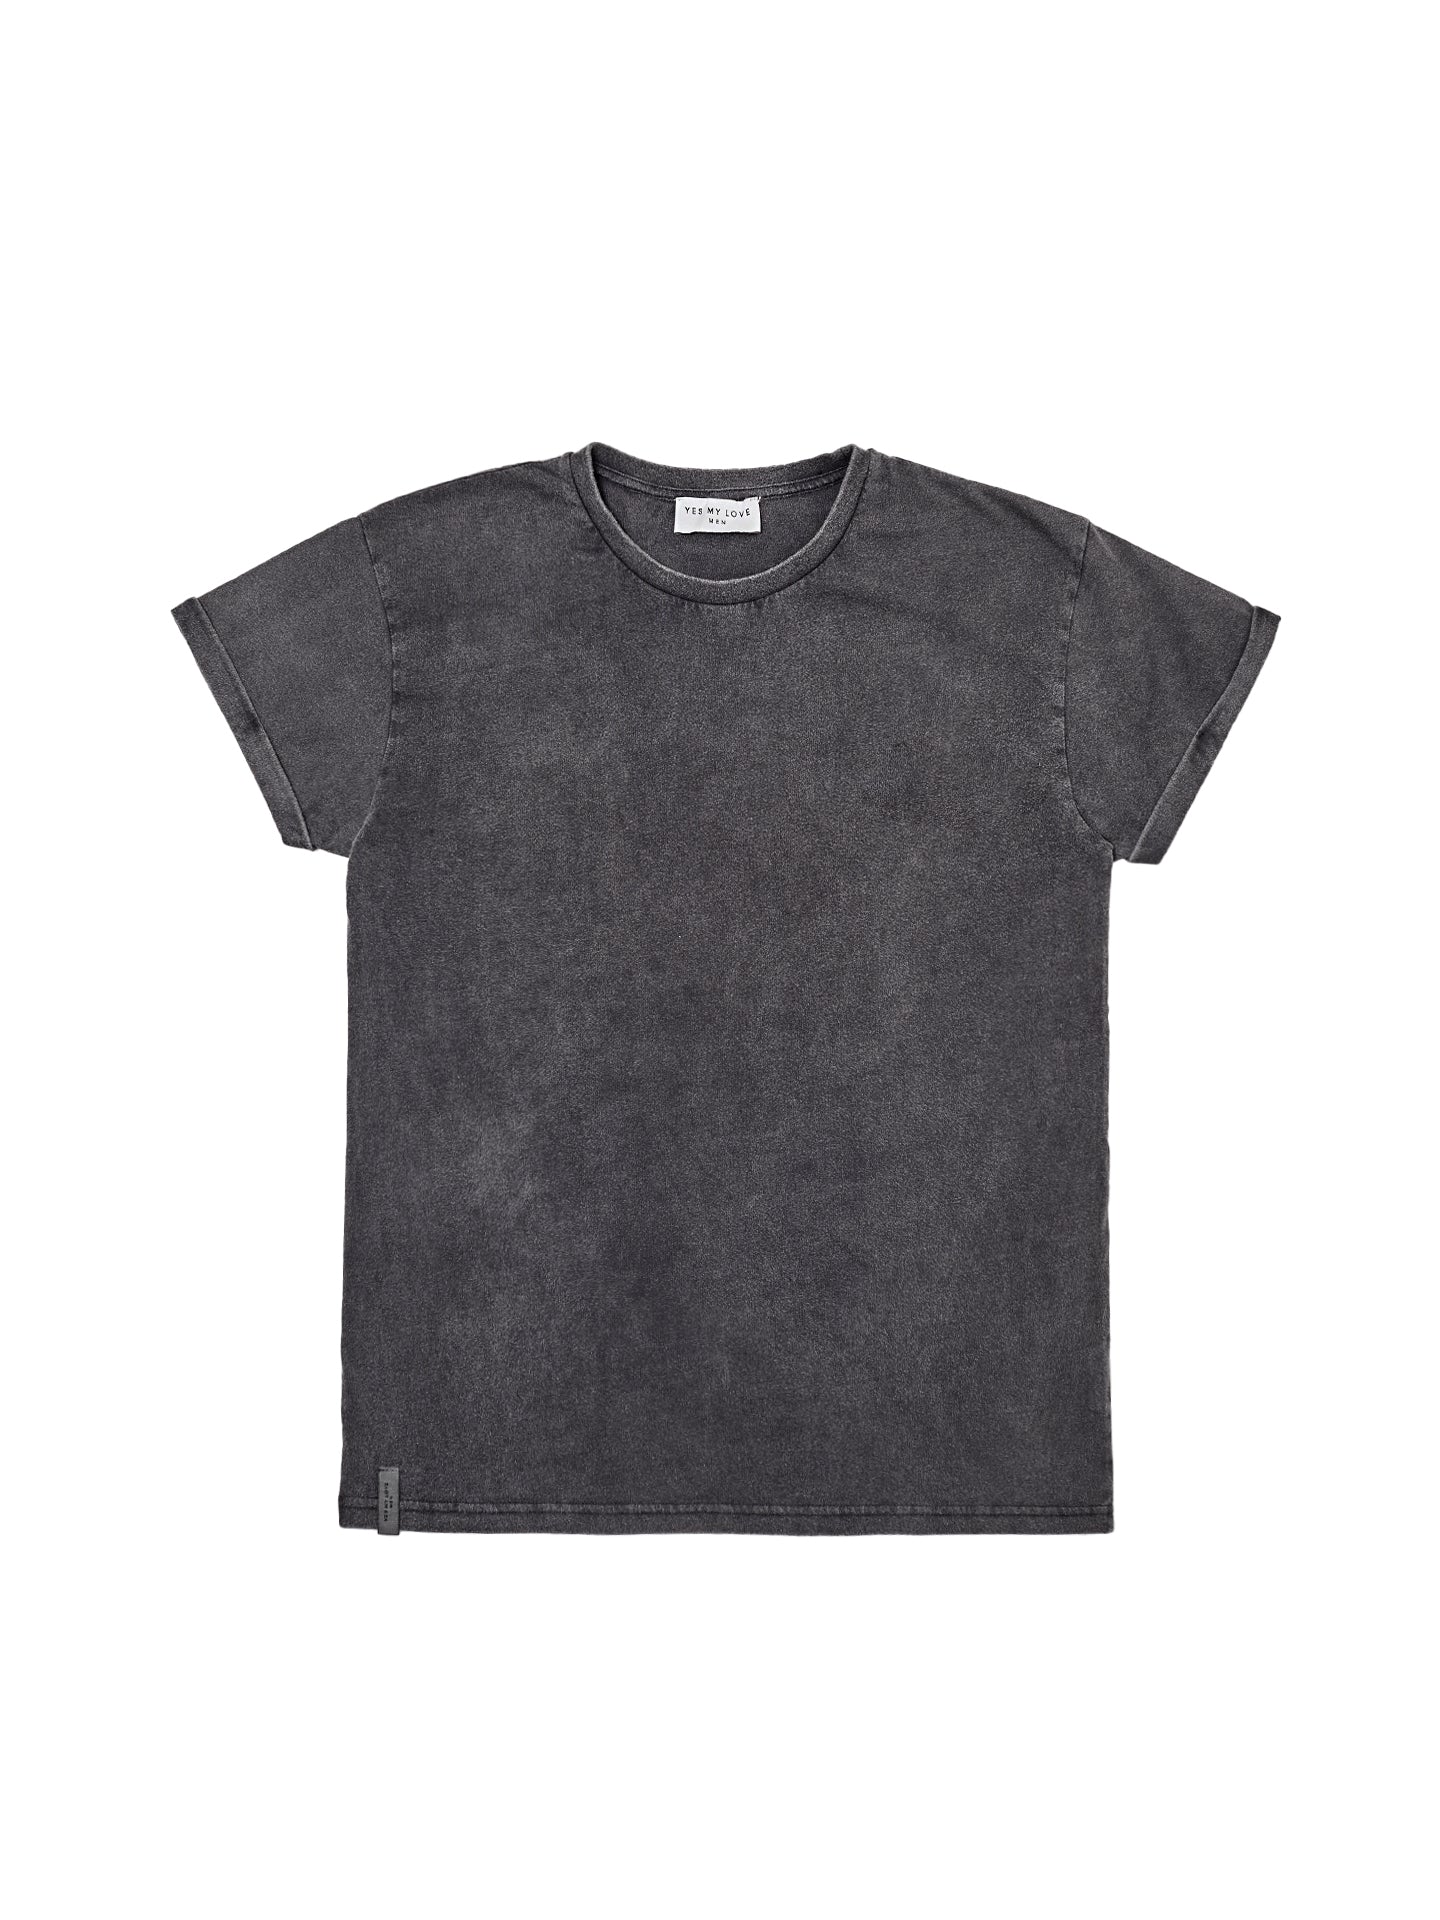 T-Shirt Men - vintage schwarz